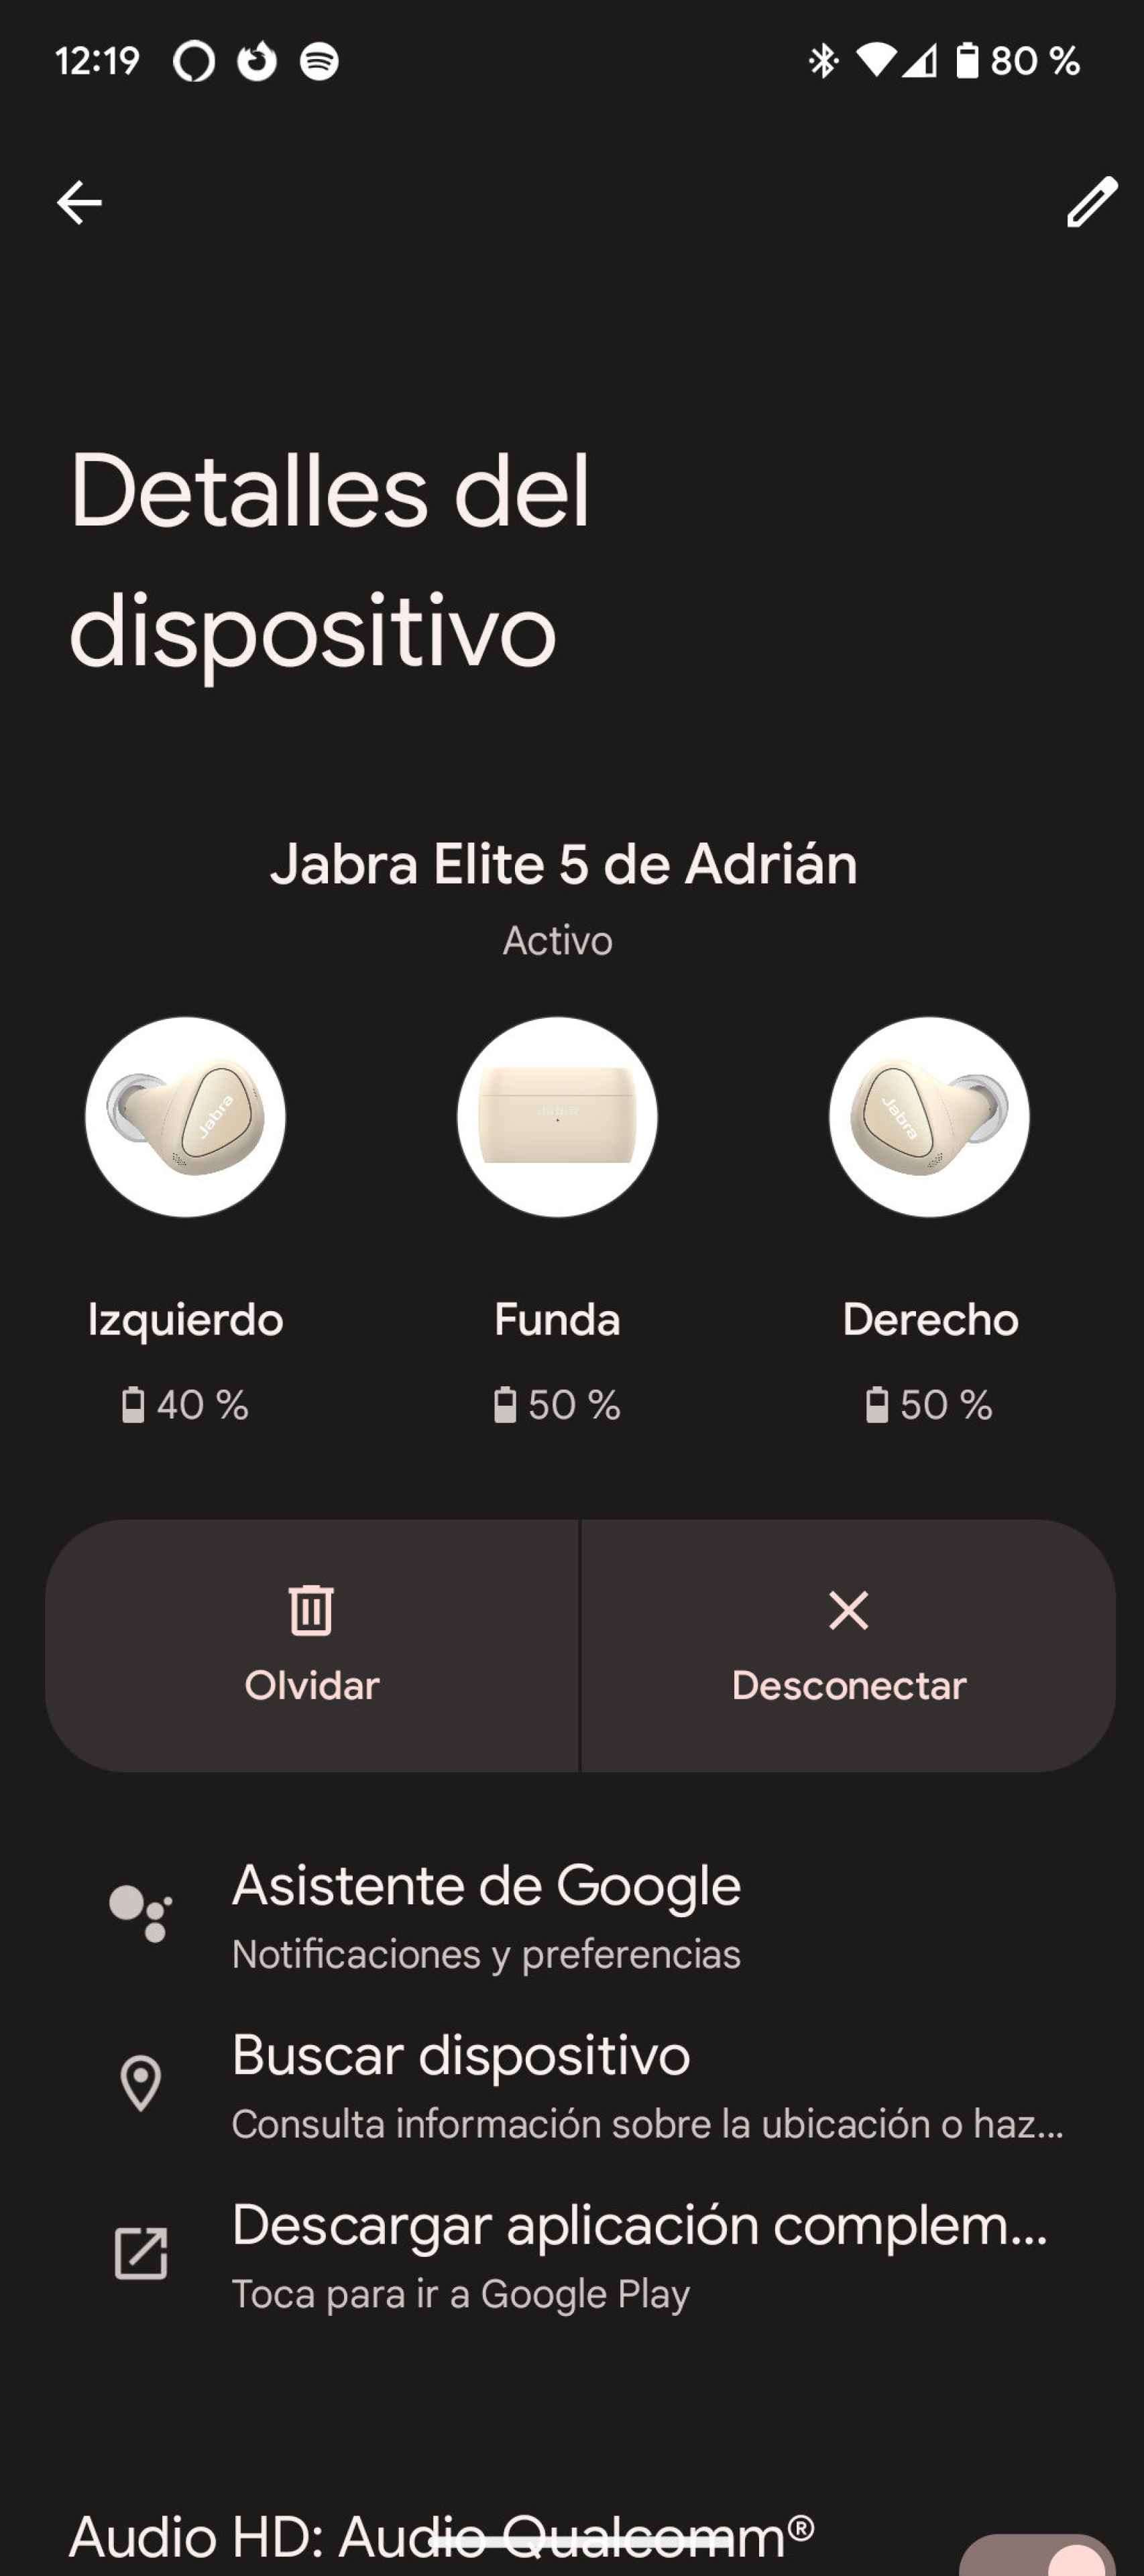 Los Jabra Elite 5 se integran muy bien con Android